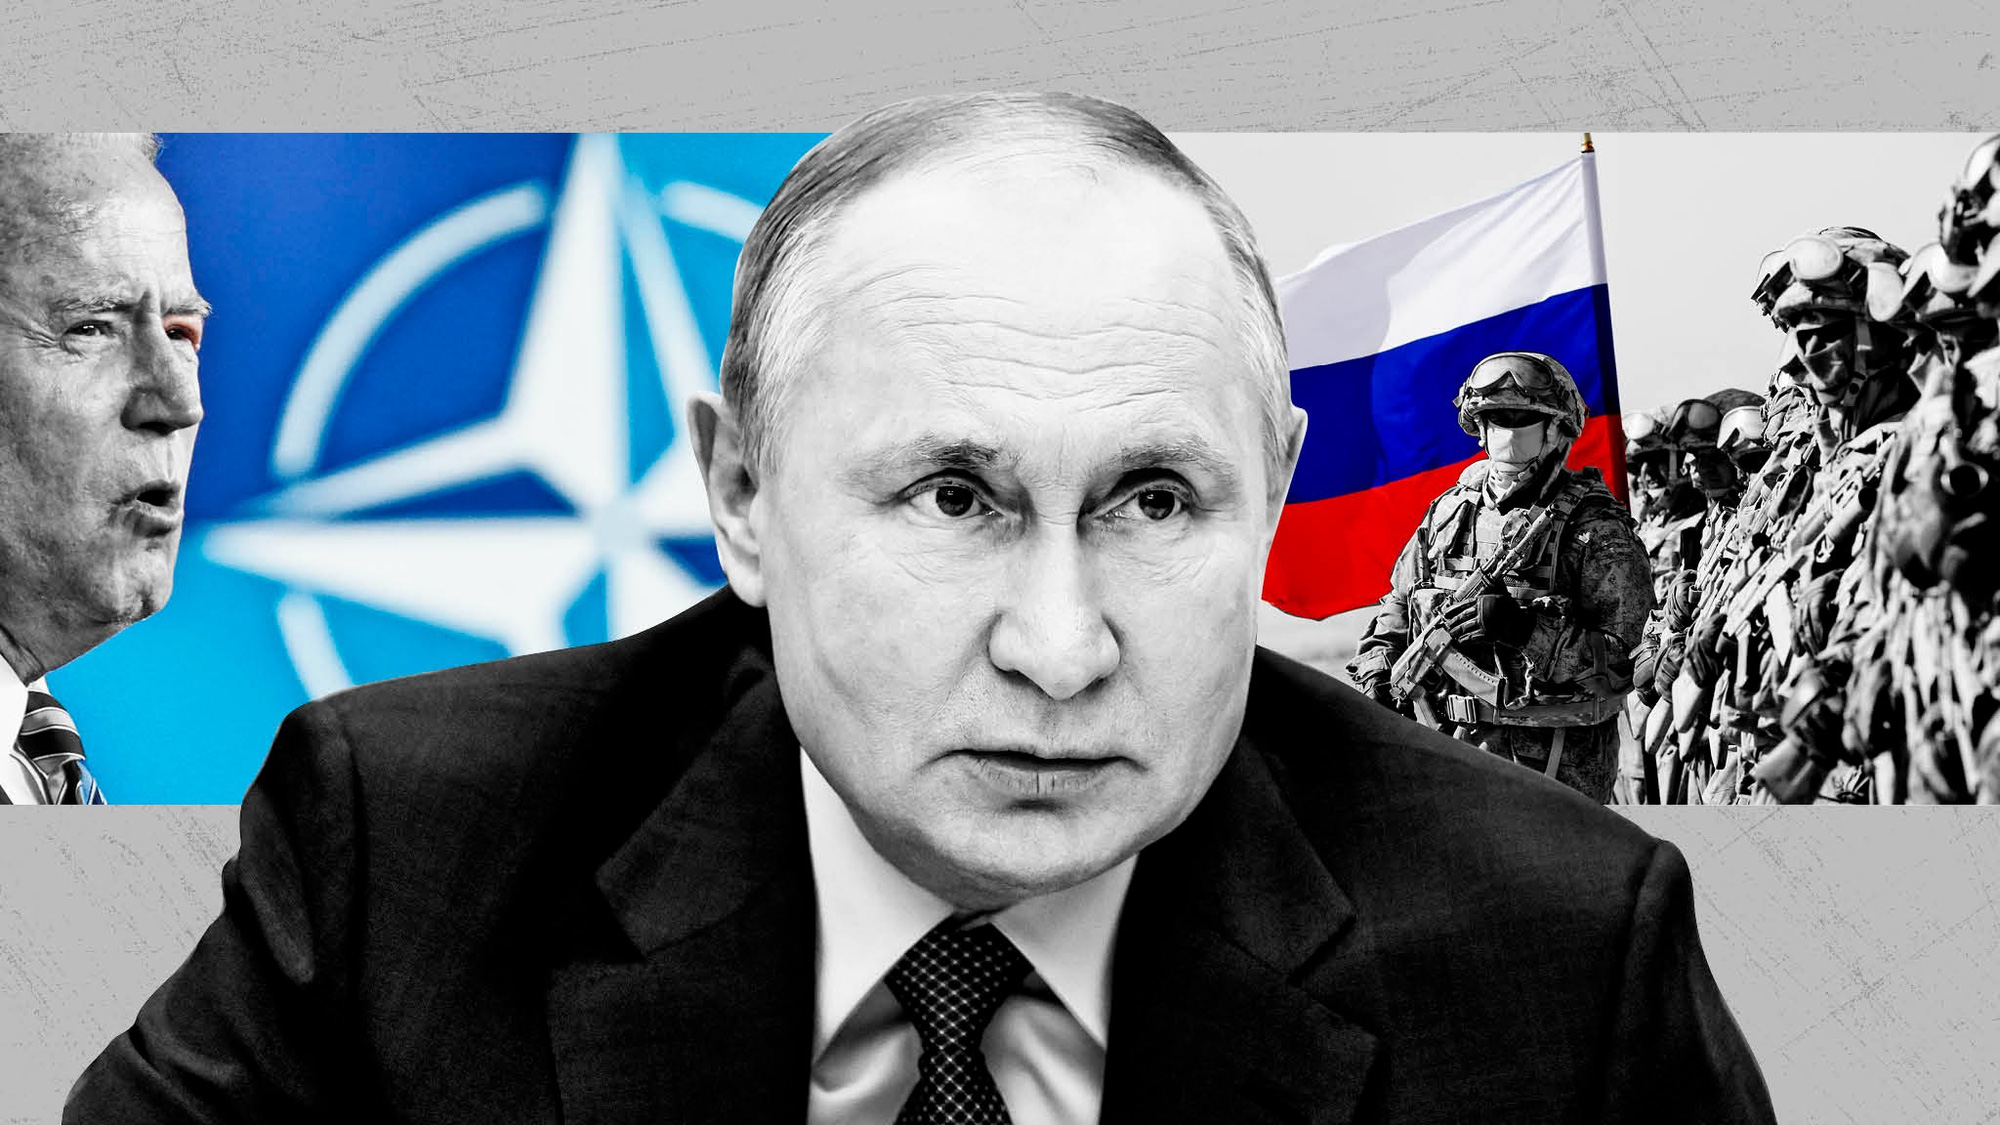 Putin đang làm NATO mạnh lên dù có tấn công Ukraine hay không? - Ảnh 1.